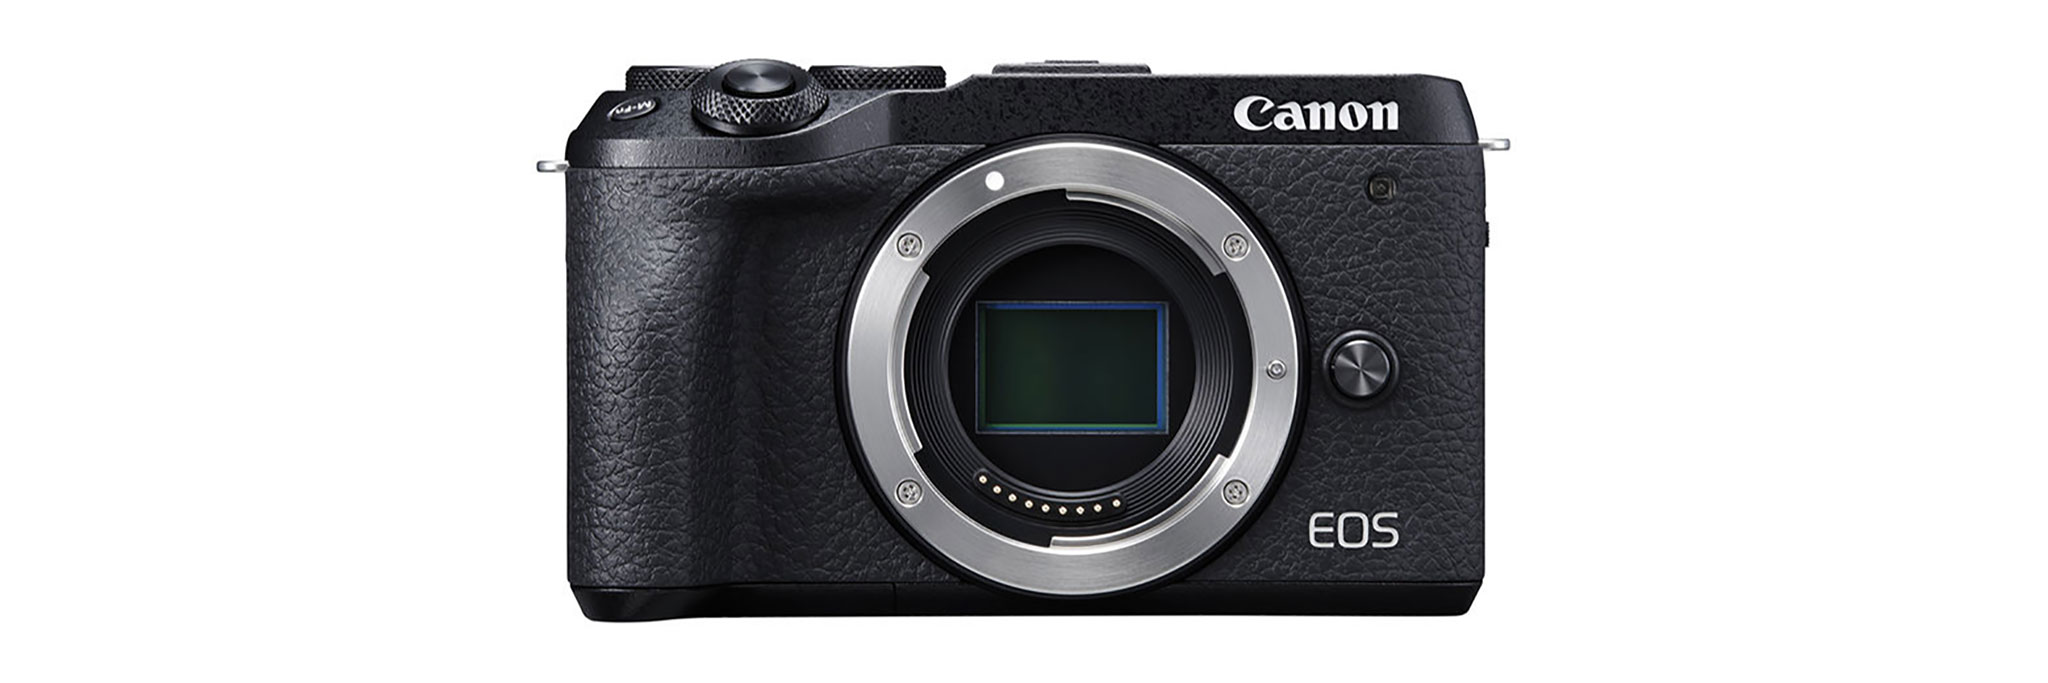 Đang tải Tinhte_Canon-EOS-M6-Mark-II_00001.jpg…